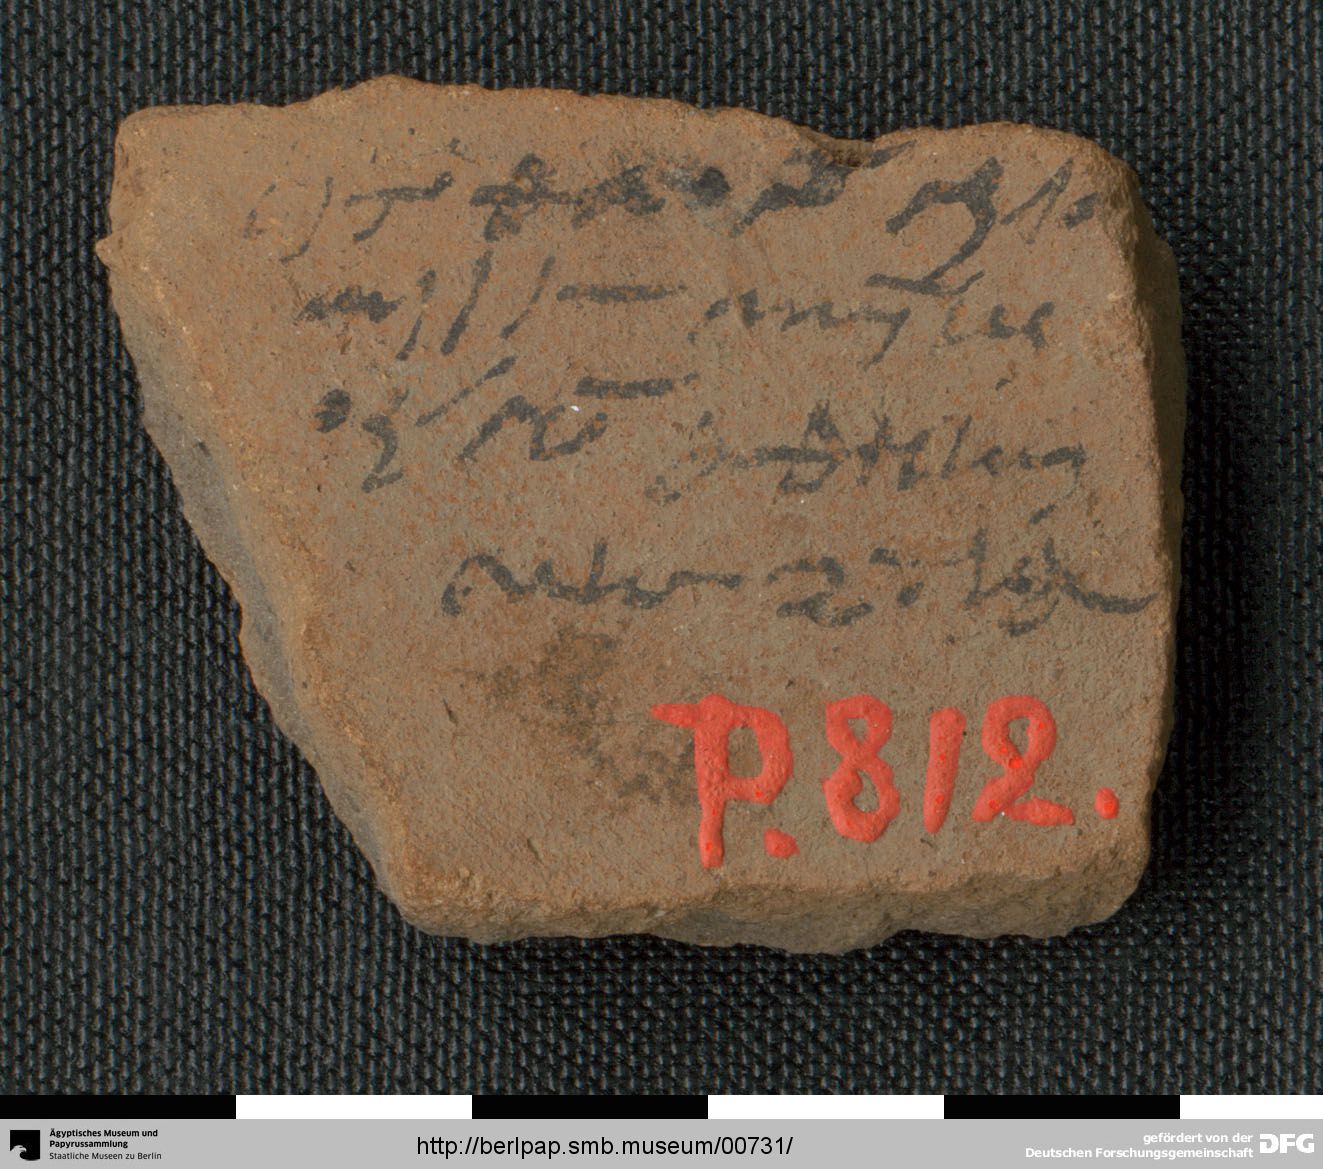 https://berlpap.smb.museum/Original/P_00812_S1_001.jpg (Ägyptisches Museum und Papyrussammlung, Staatliche Museen zu Berlin CC BY-NC-SA)